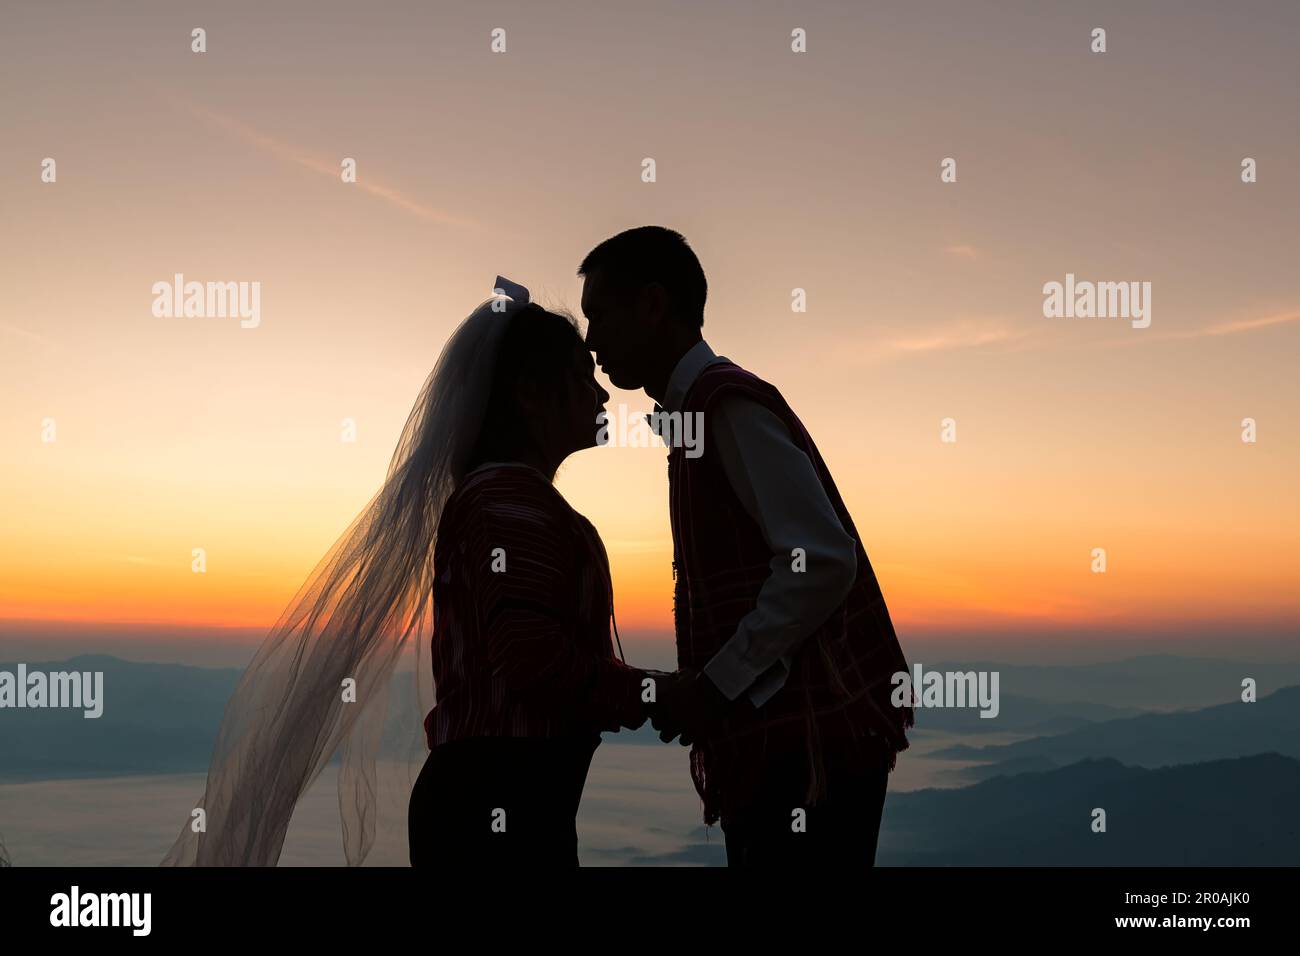 Silueta de la pareja de la boda en el amor besándose y sosteniendo la mano juntos durante la salida del sol con el fondo del cielo de la mañana Foto de stock